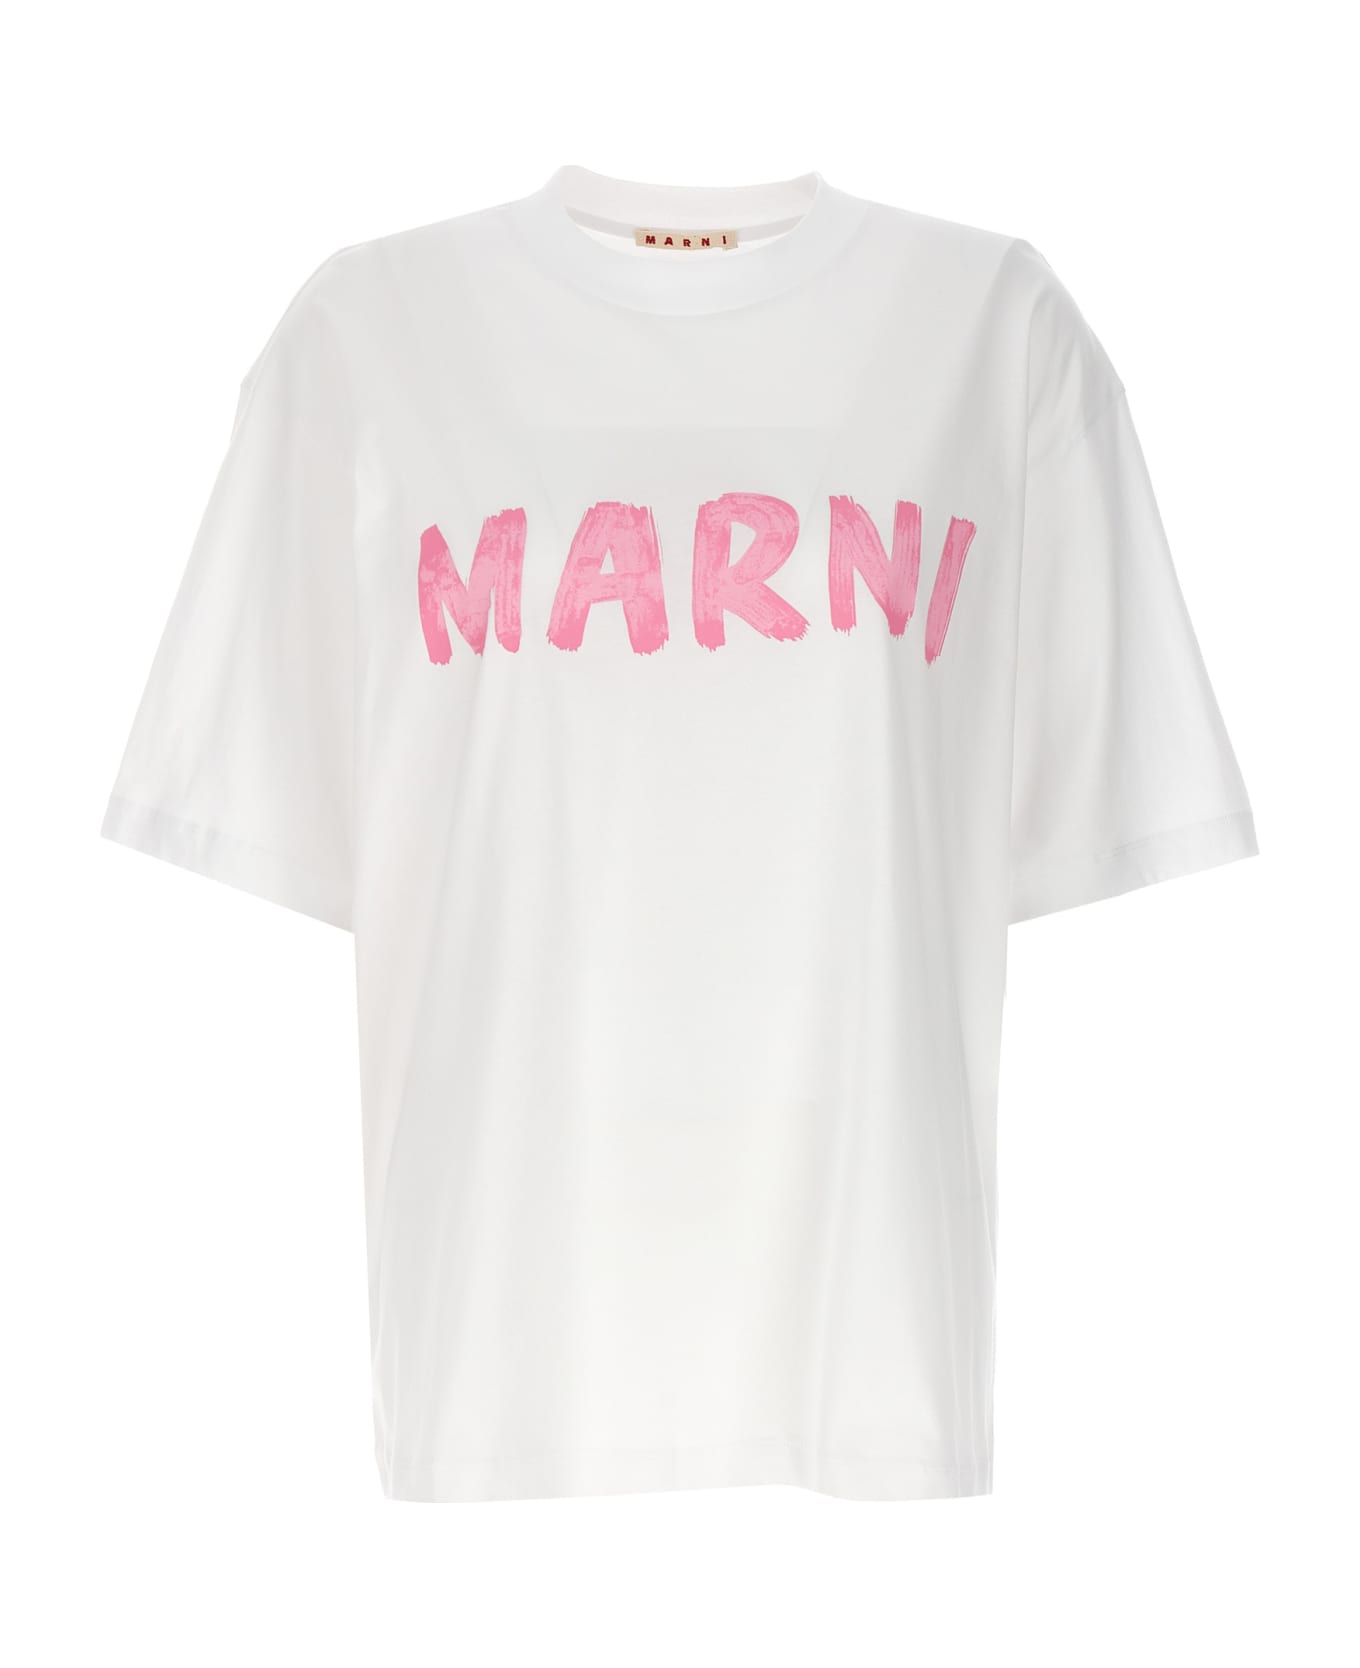 Marni Logo Print T-shirt - White Tシャツ